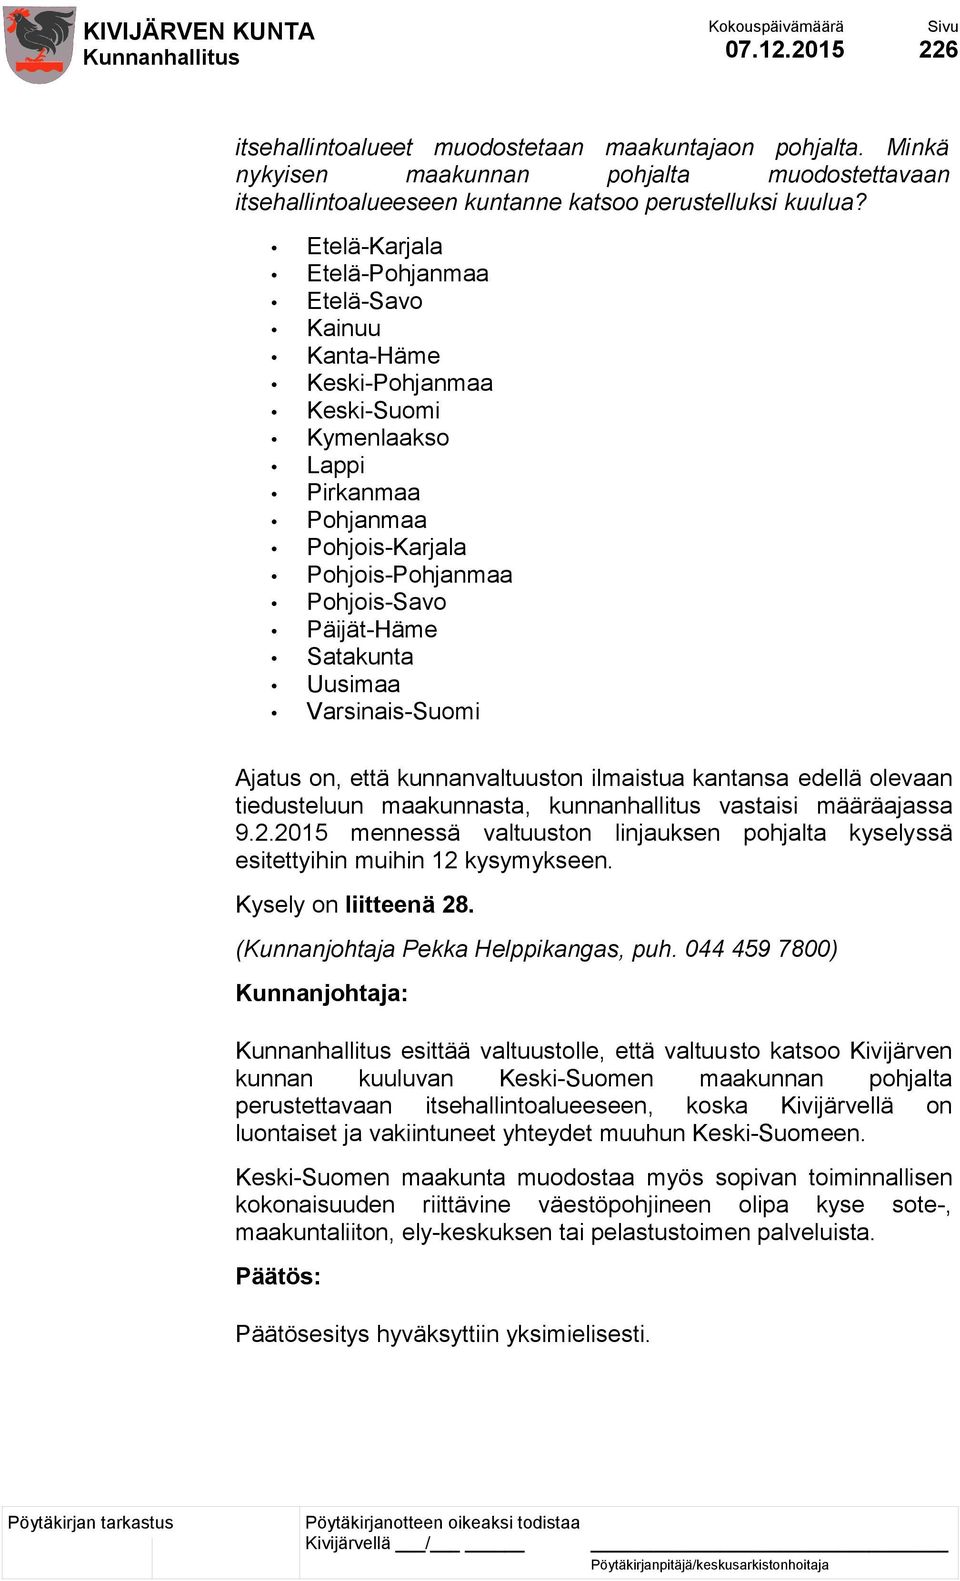 Uusimaa Varsinais-Suomi Ajatus on, että kunnanvaltuuston ilmaistua kantansa edellä olevaan tiedusteluun maakunnasta, kunnanhallitus vastaisi määräajassa 9.2.